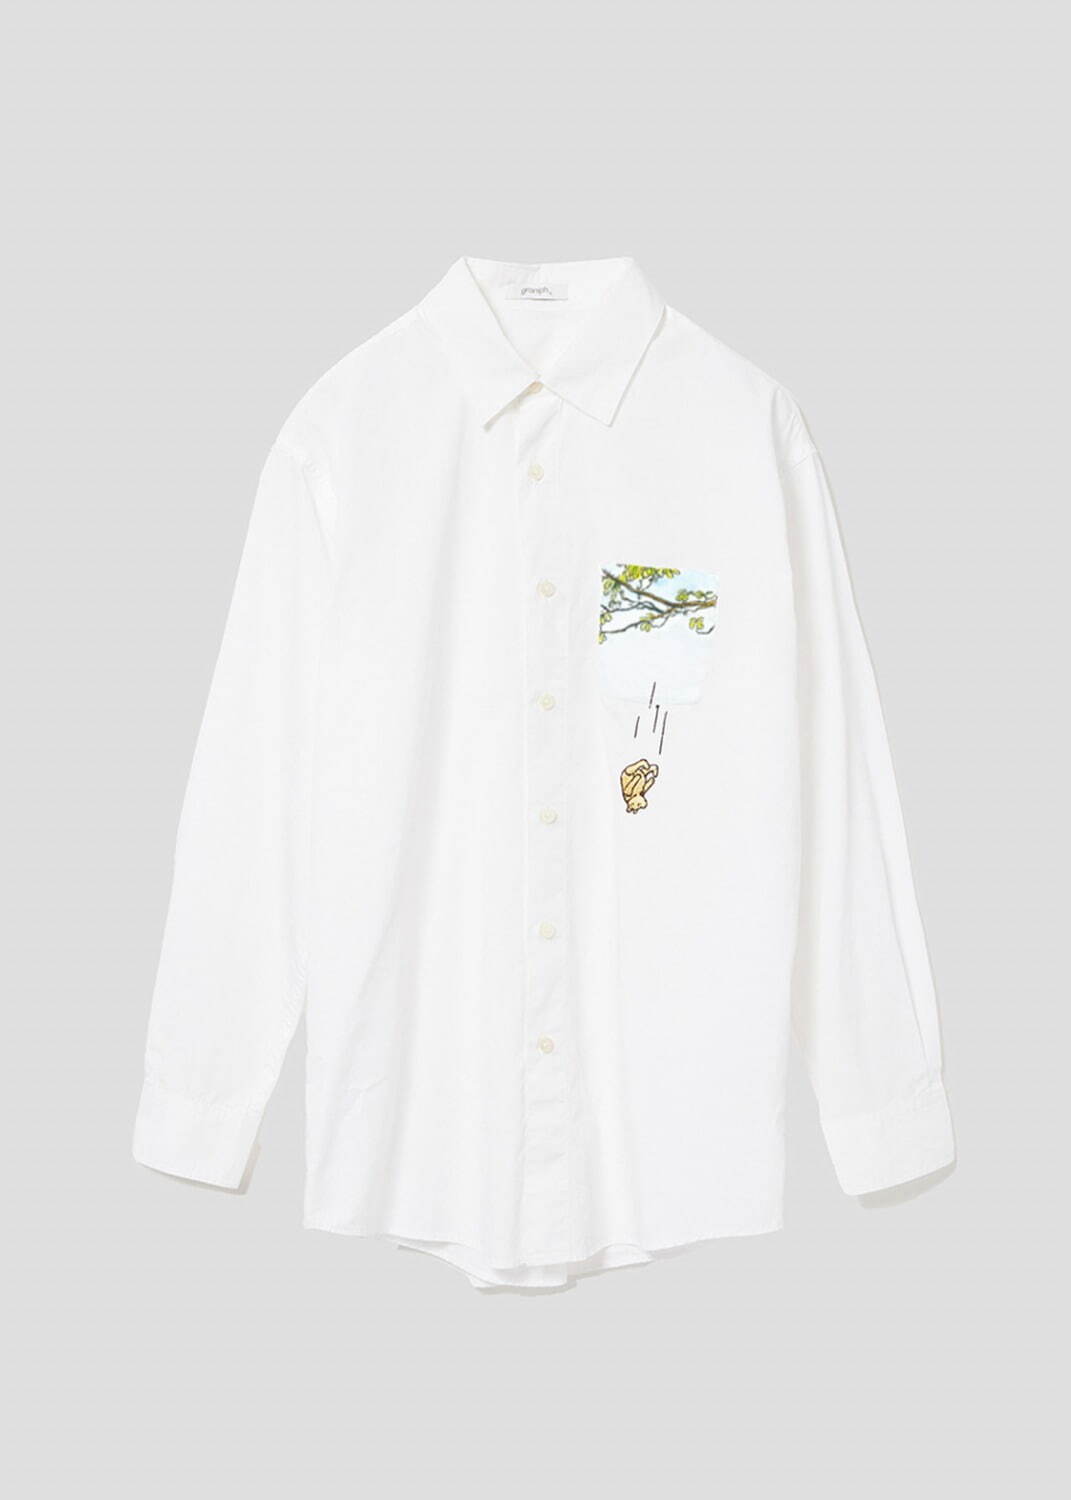 長袖シャツ「木から落ちるプー」6,900円